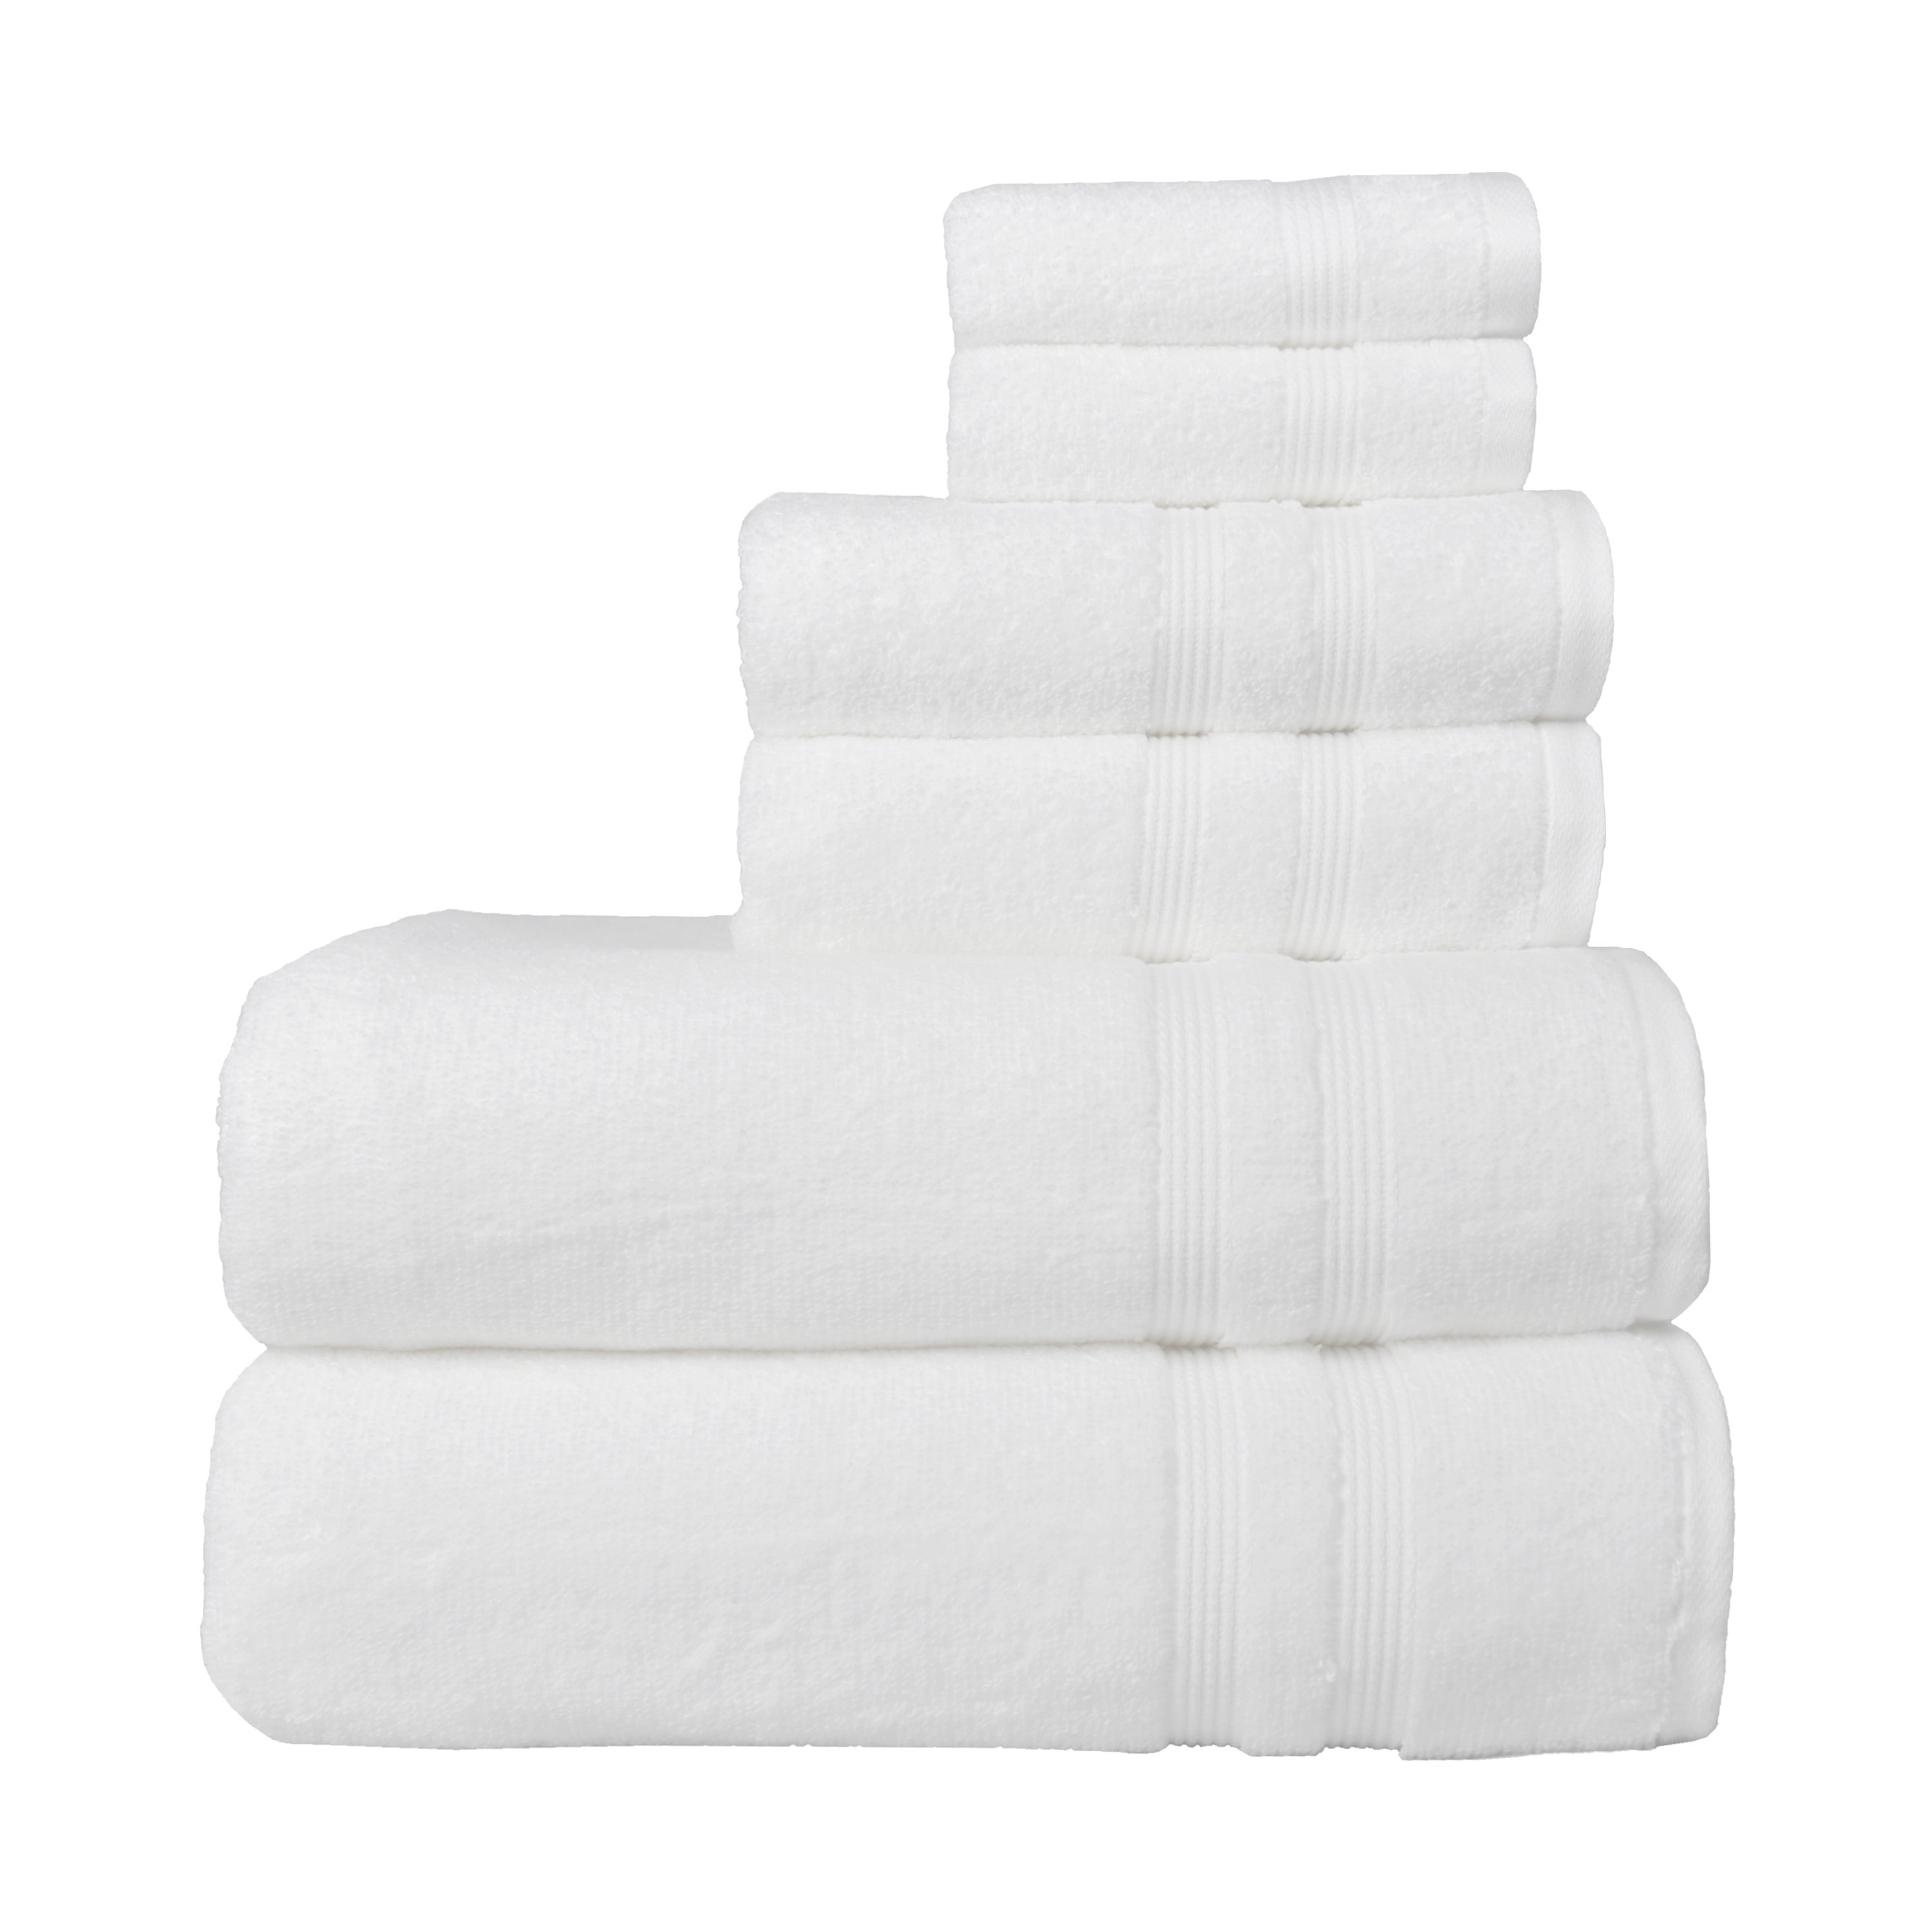 Mainstays 6 Piece Textures Cotton Bath Towel Set, Arctic White, Size: 6-Piece Towel Set (2 Bath + 2 Hand + 2 Washcloths)